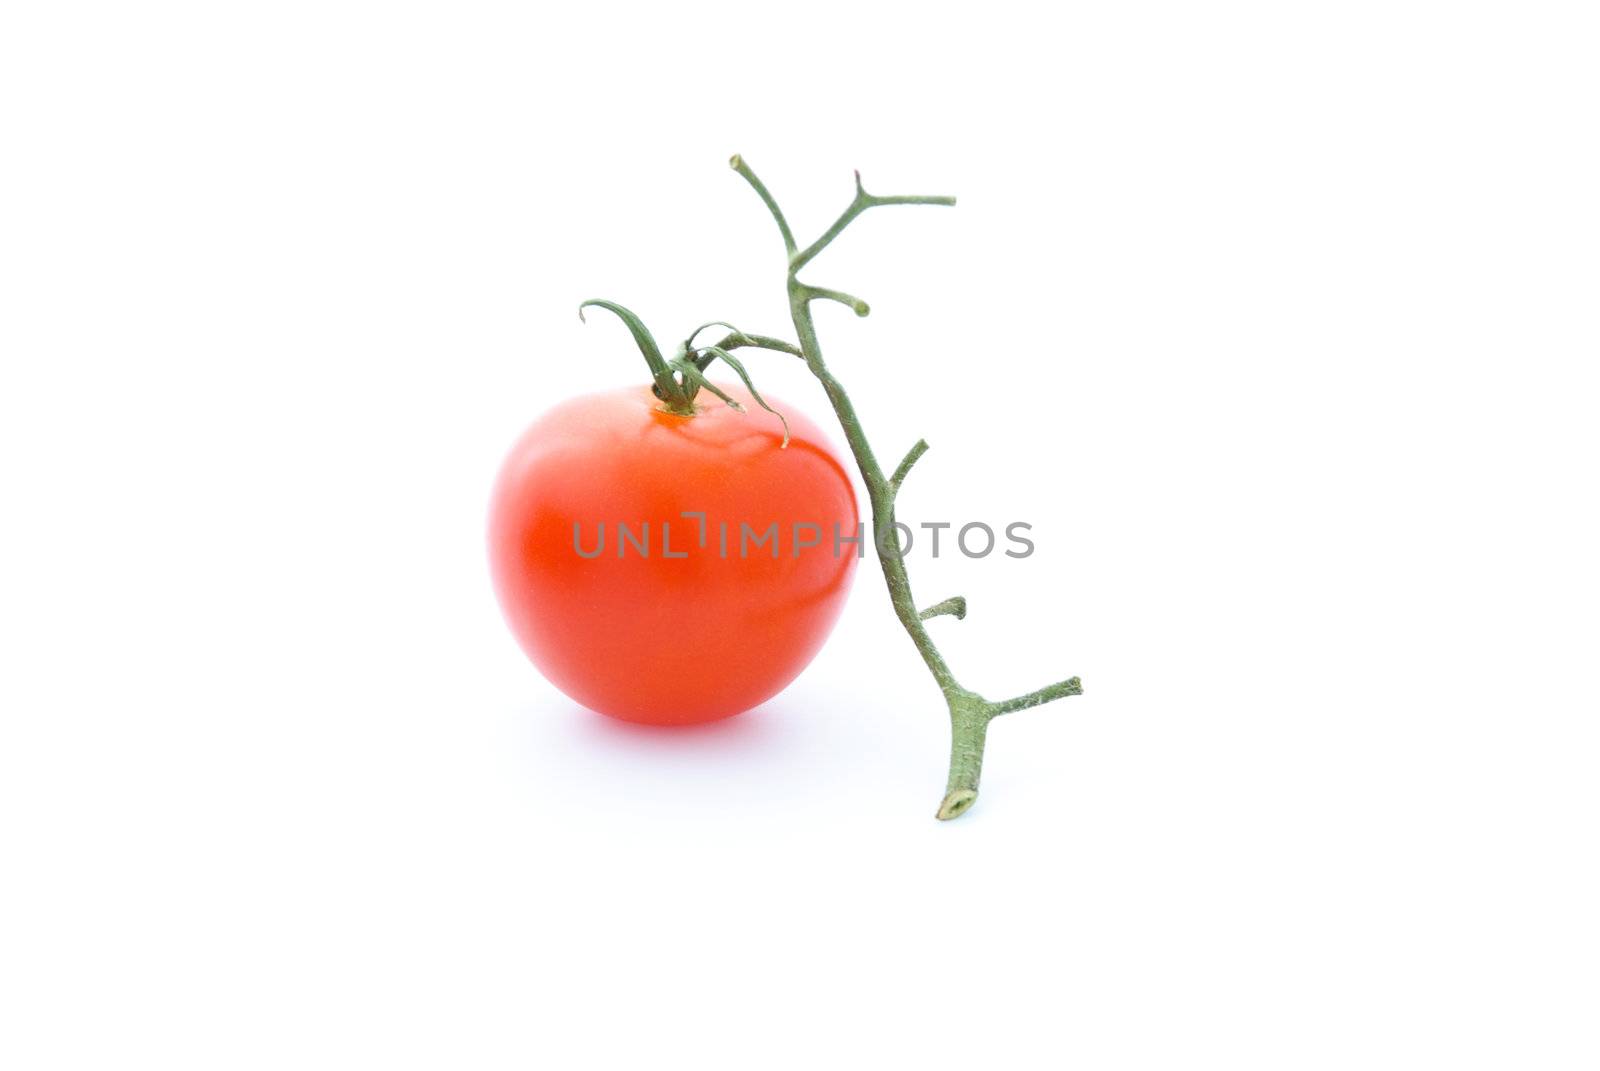 Tomato by krivsun